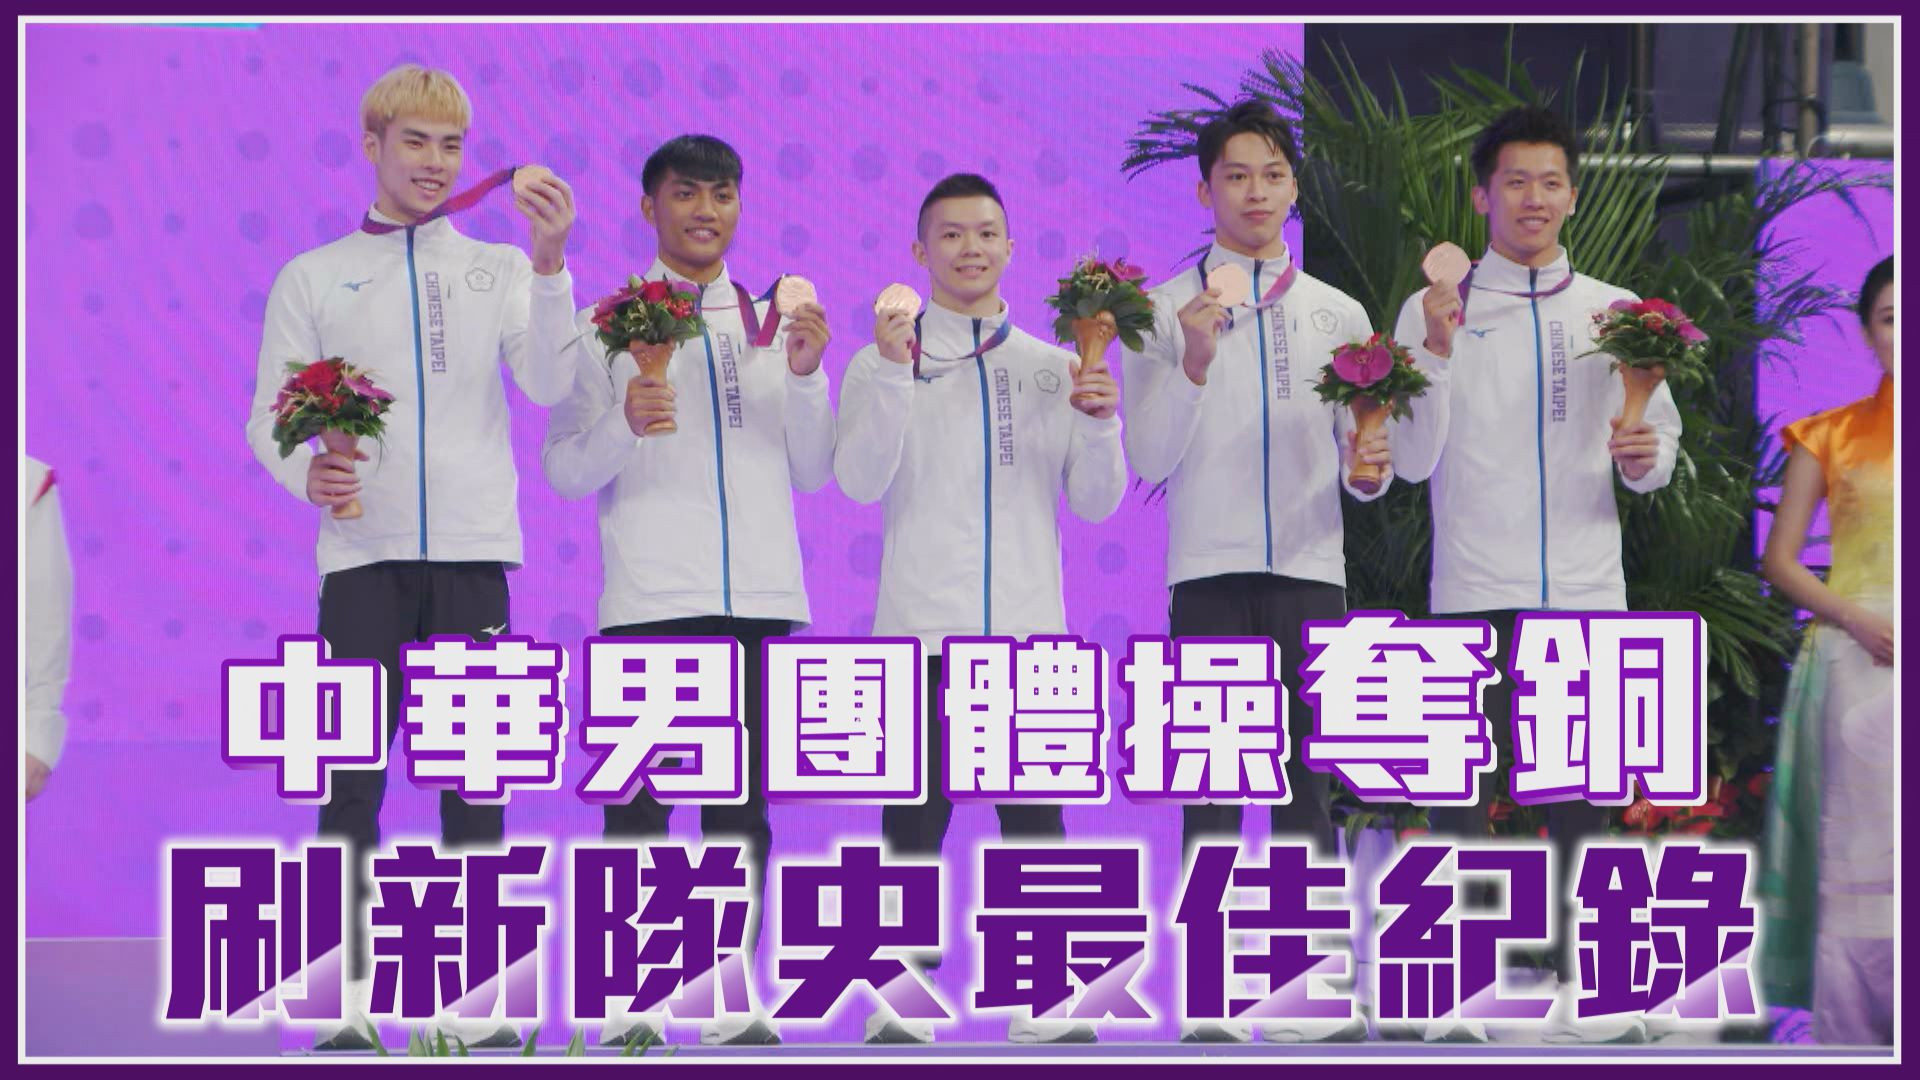 09/24 中華男團體操奪銅 刷新隊史最佳紀錄